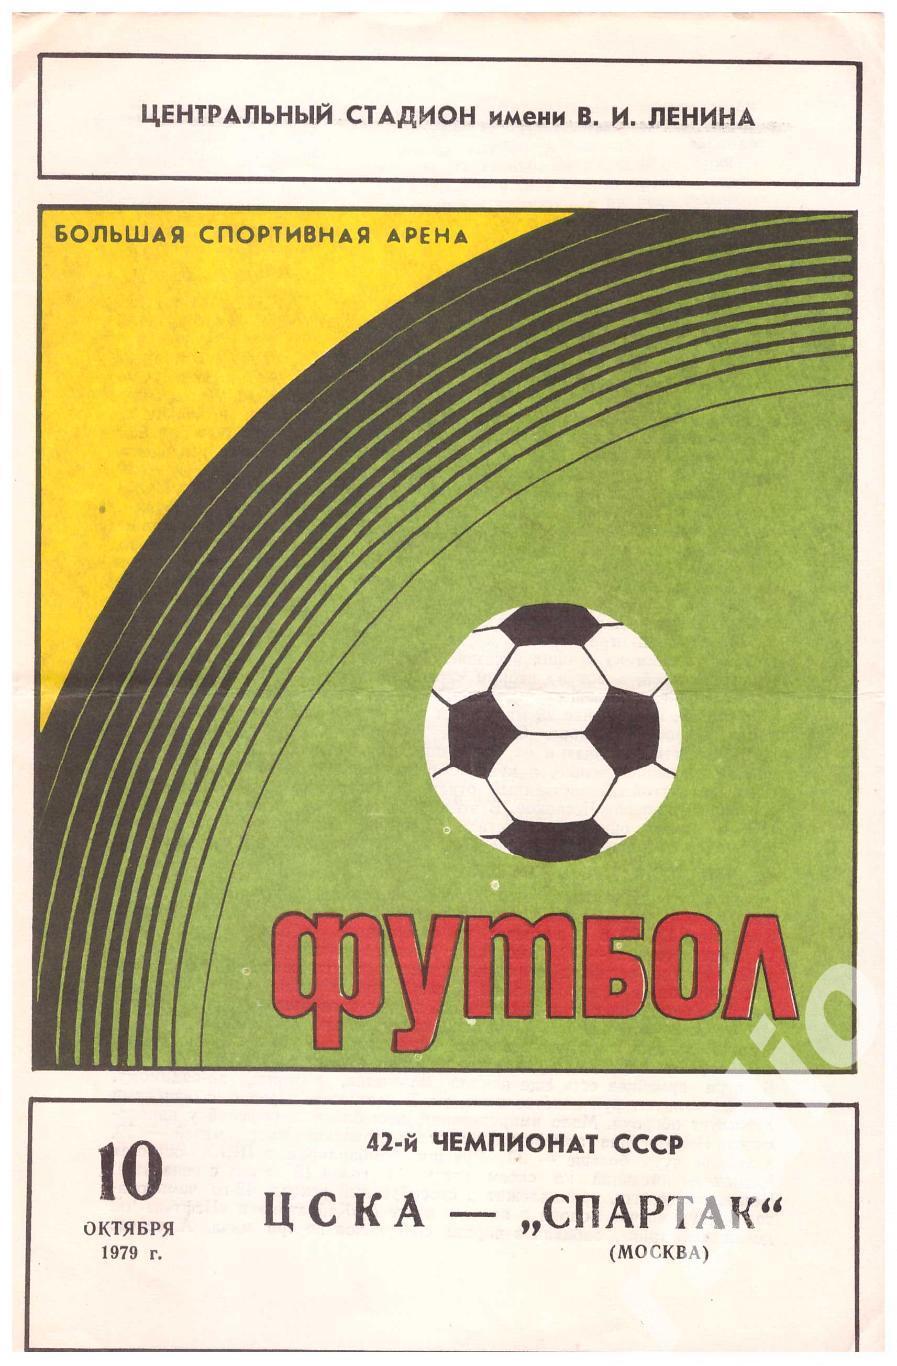 1979 ЦСКА - Спартак Москва